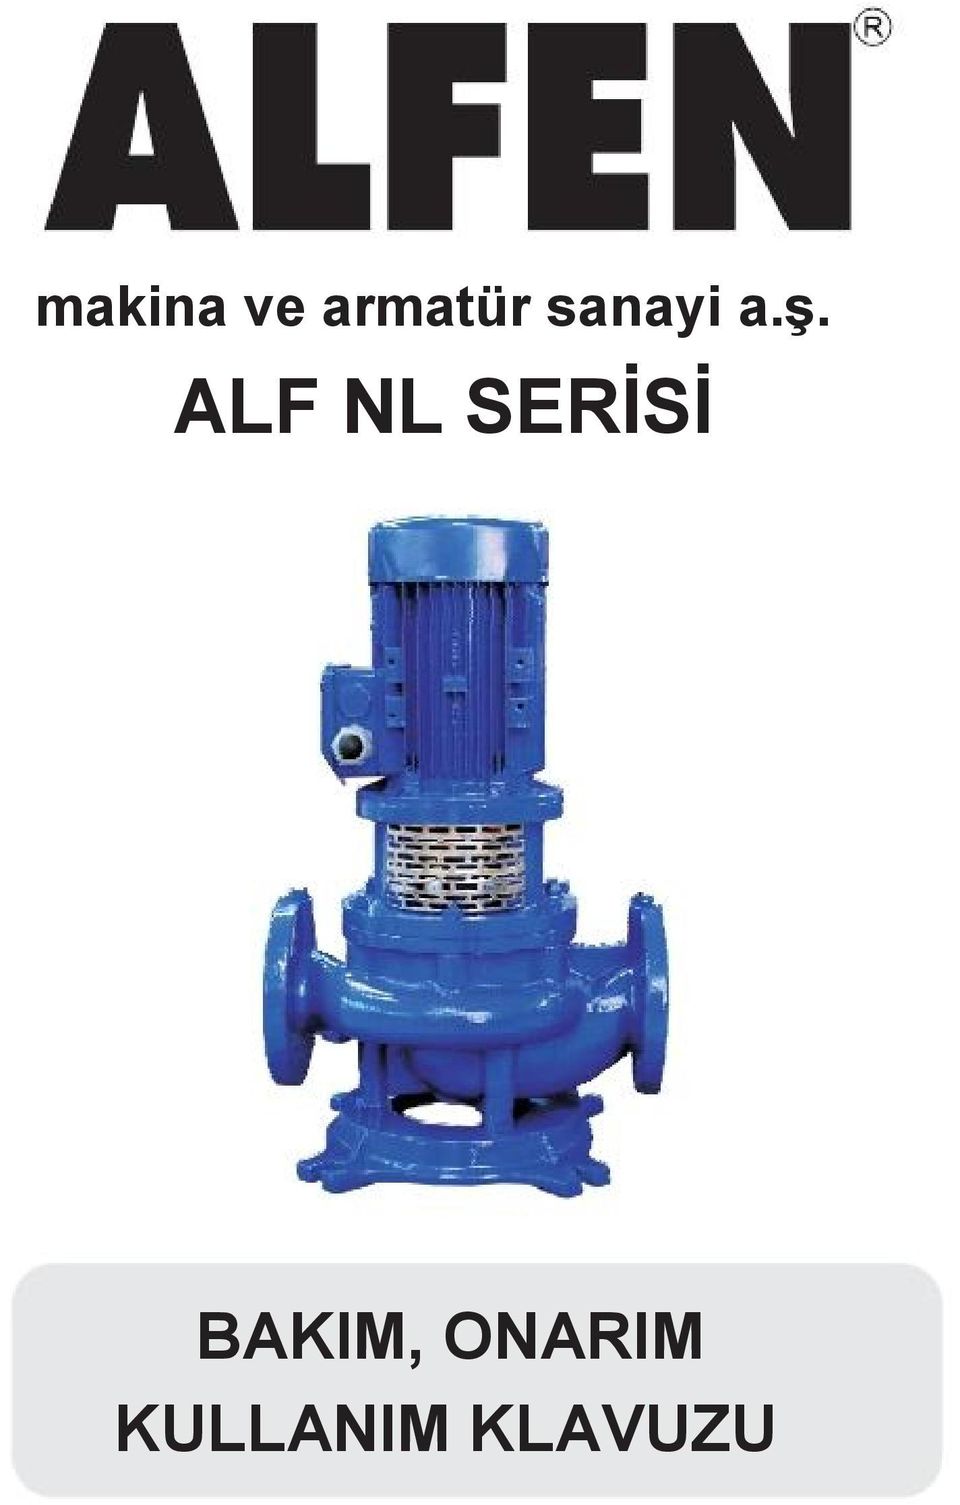 ALF NL SERİSİ